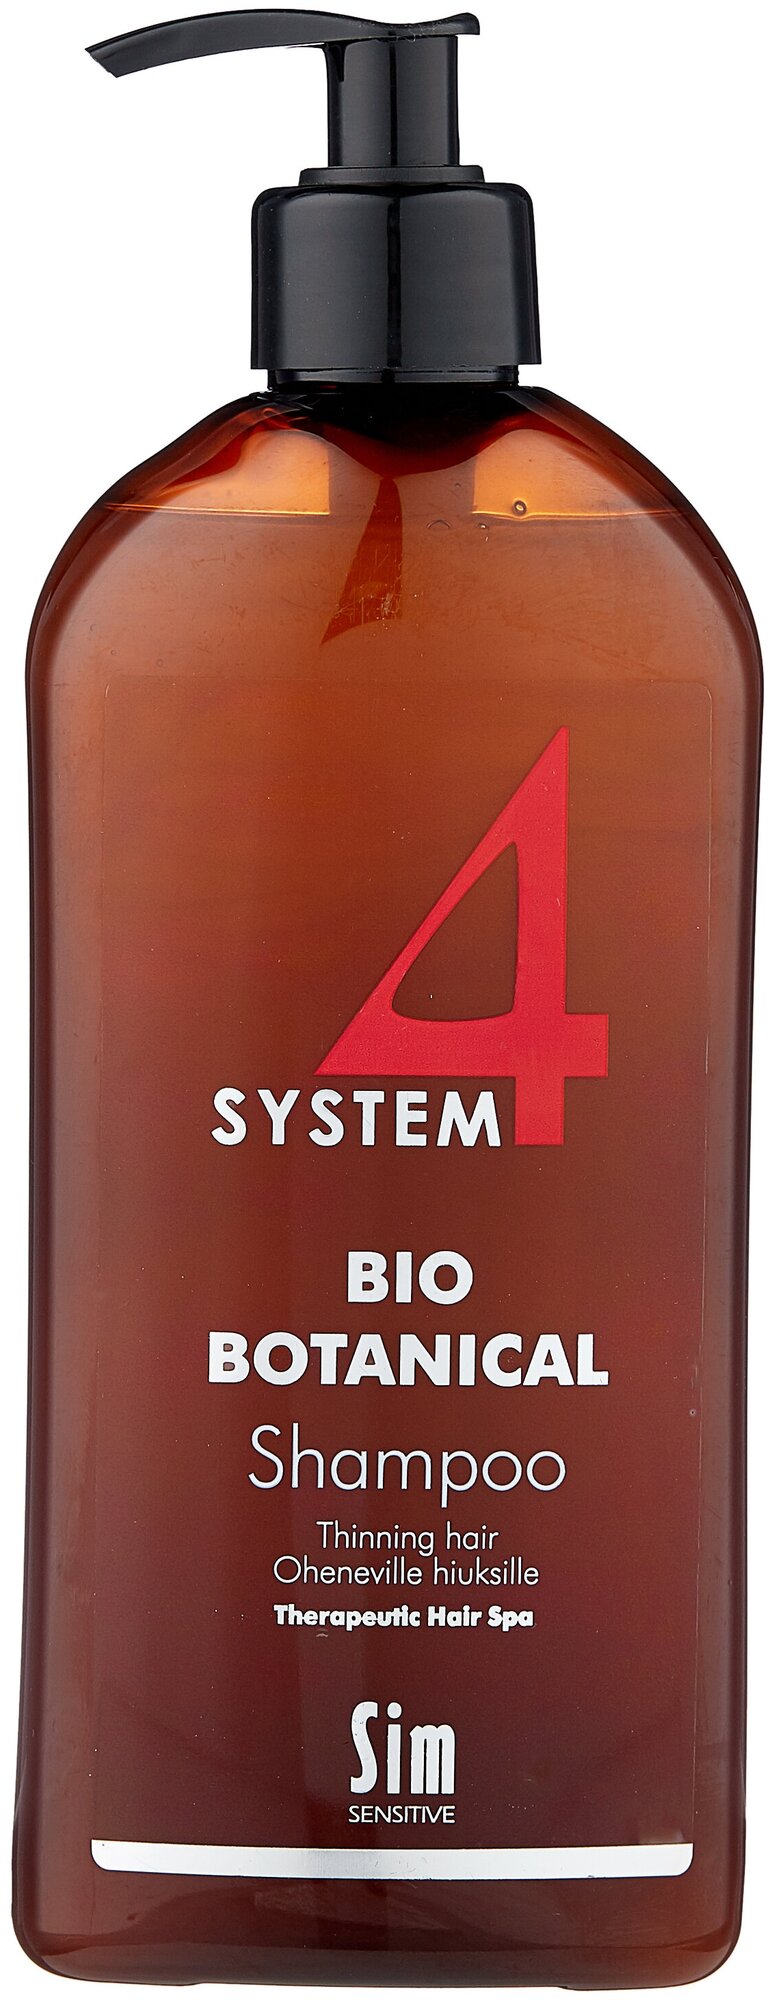 Sim Sensitive шампунь System4 Bio Botanical, 75 мл — купить в по низкой цене на Маркете